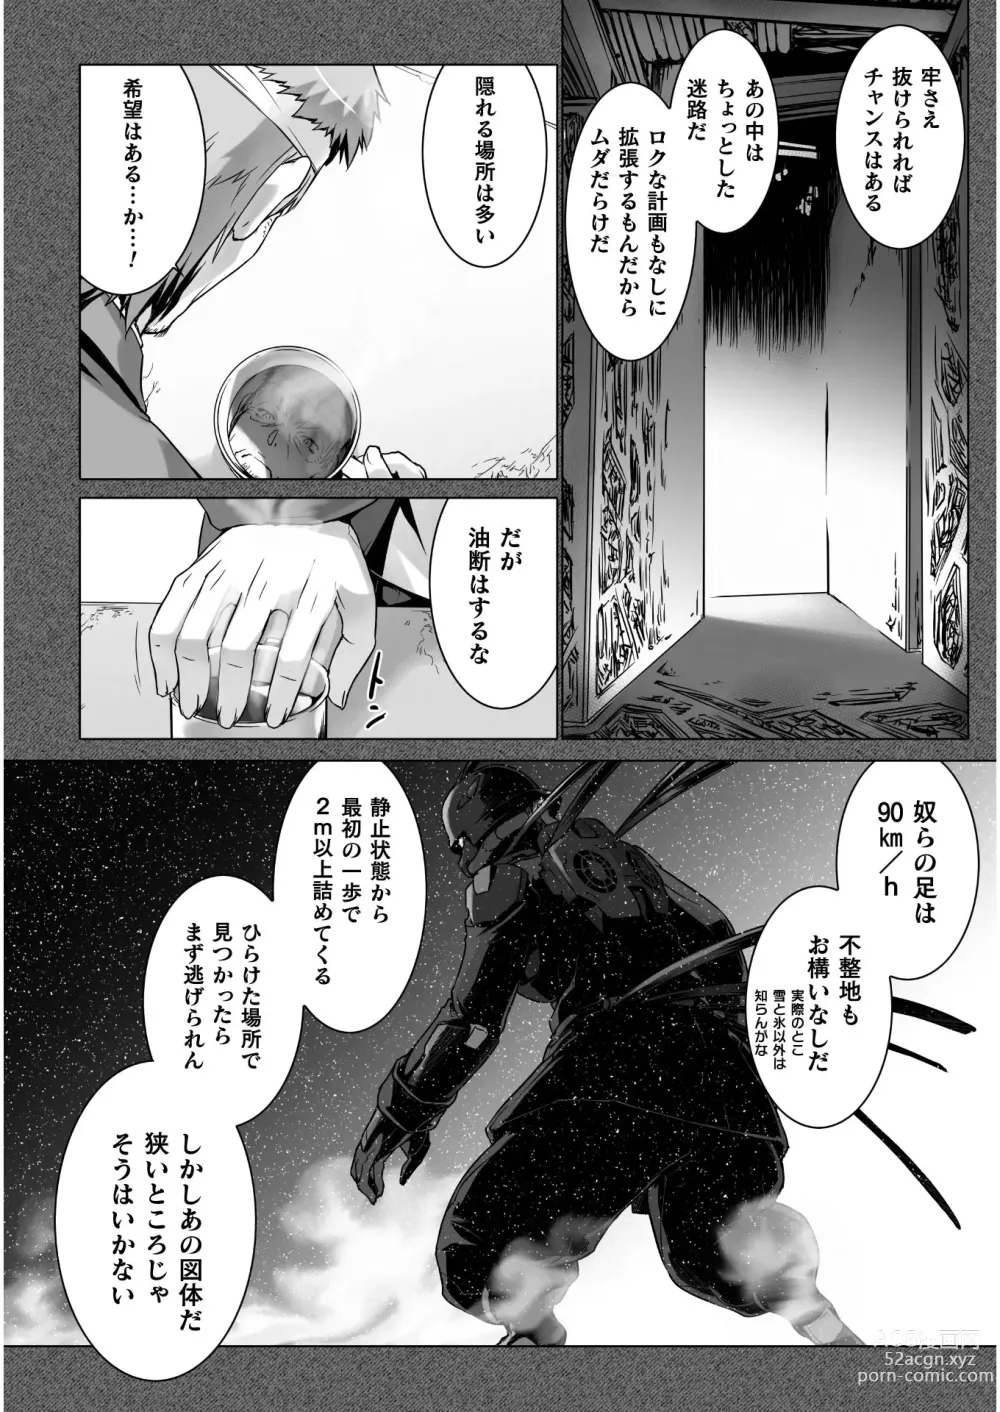 Page 286 of manga Ziggurat Ch. 51 - 62